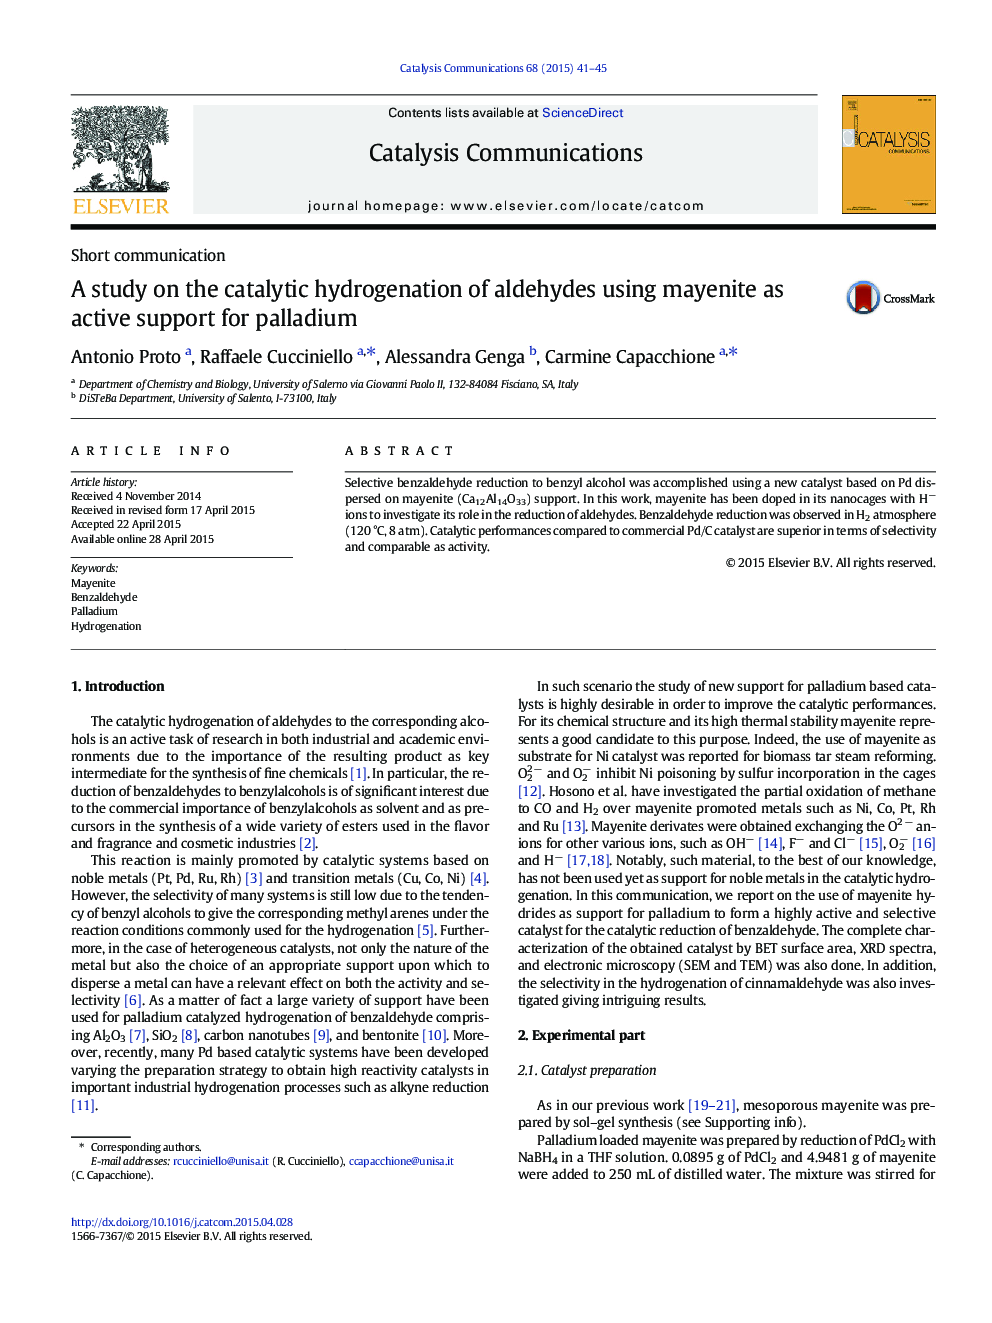 مطالعه بر روی هیدروژنه شدن کاتالیزوری آلدئیدها با استفاده از مزاننیت به عنوان حمایت فعال پالادیوم 